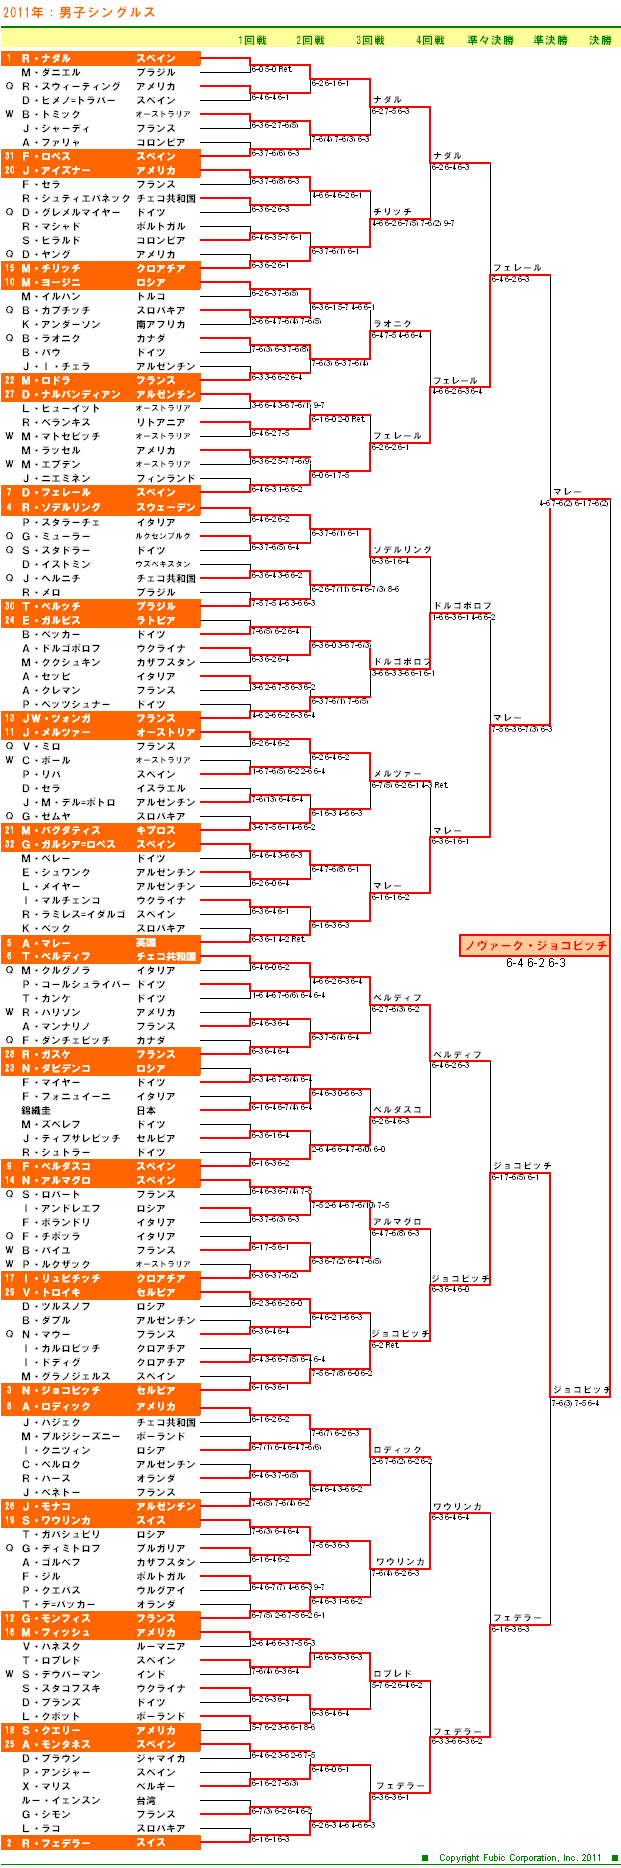 全豪オープンテニス2011　男子シングルスドロー表